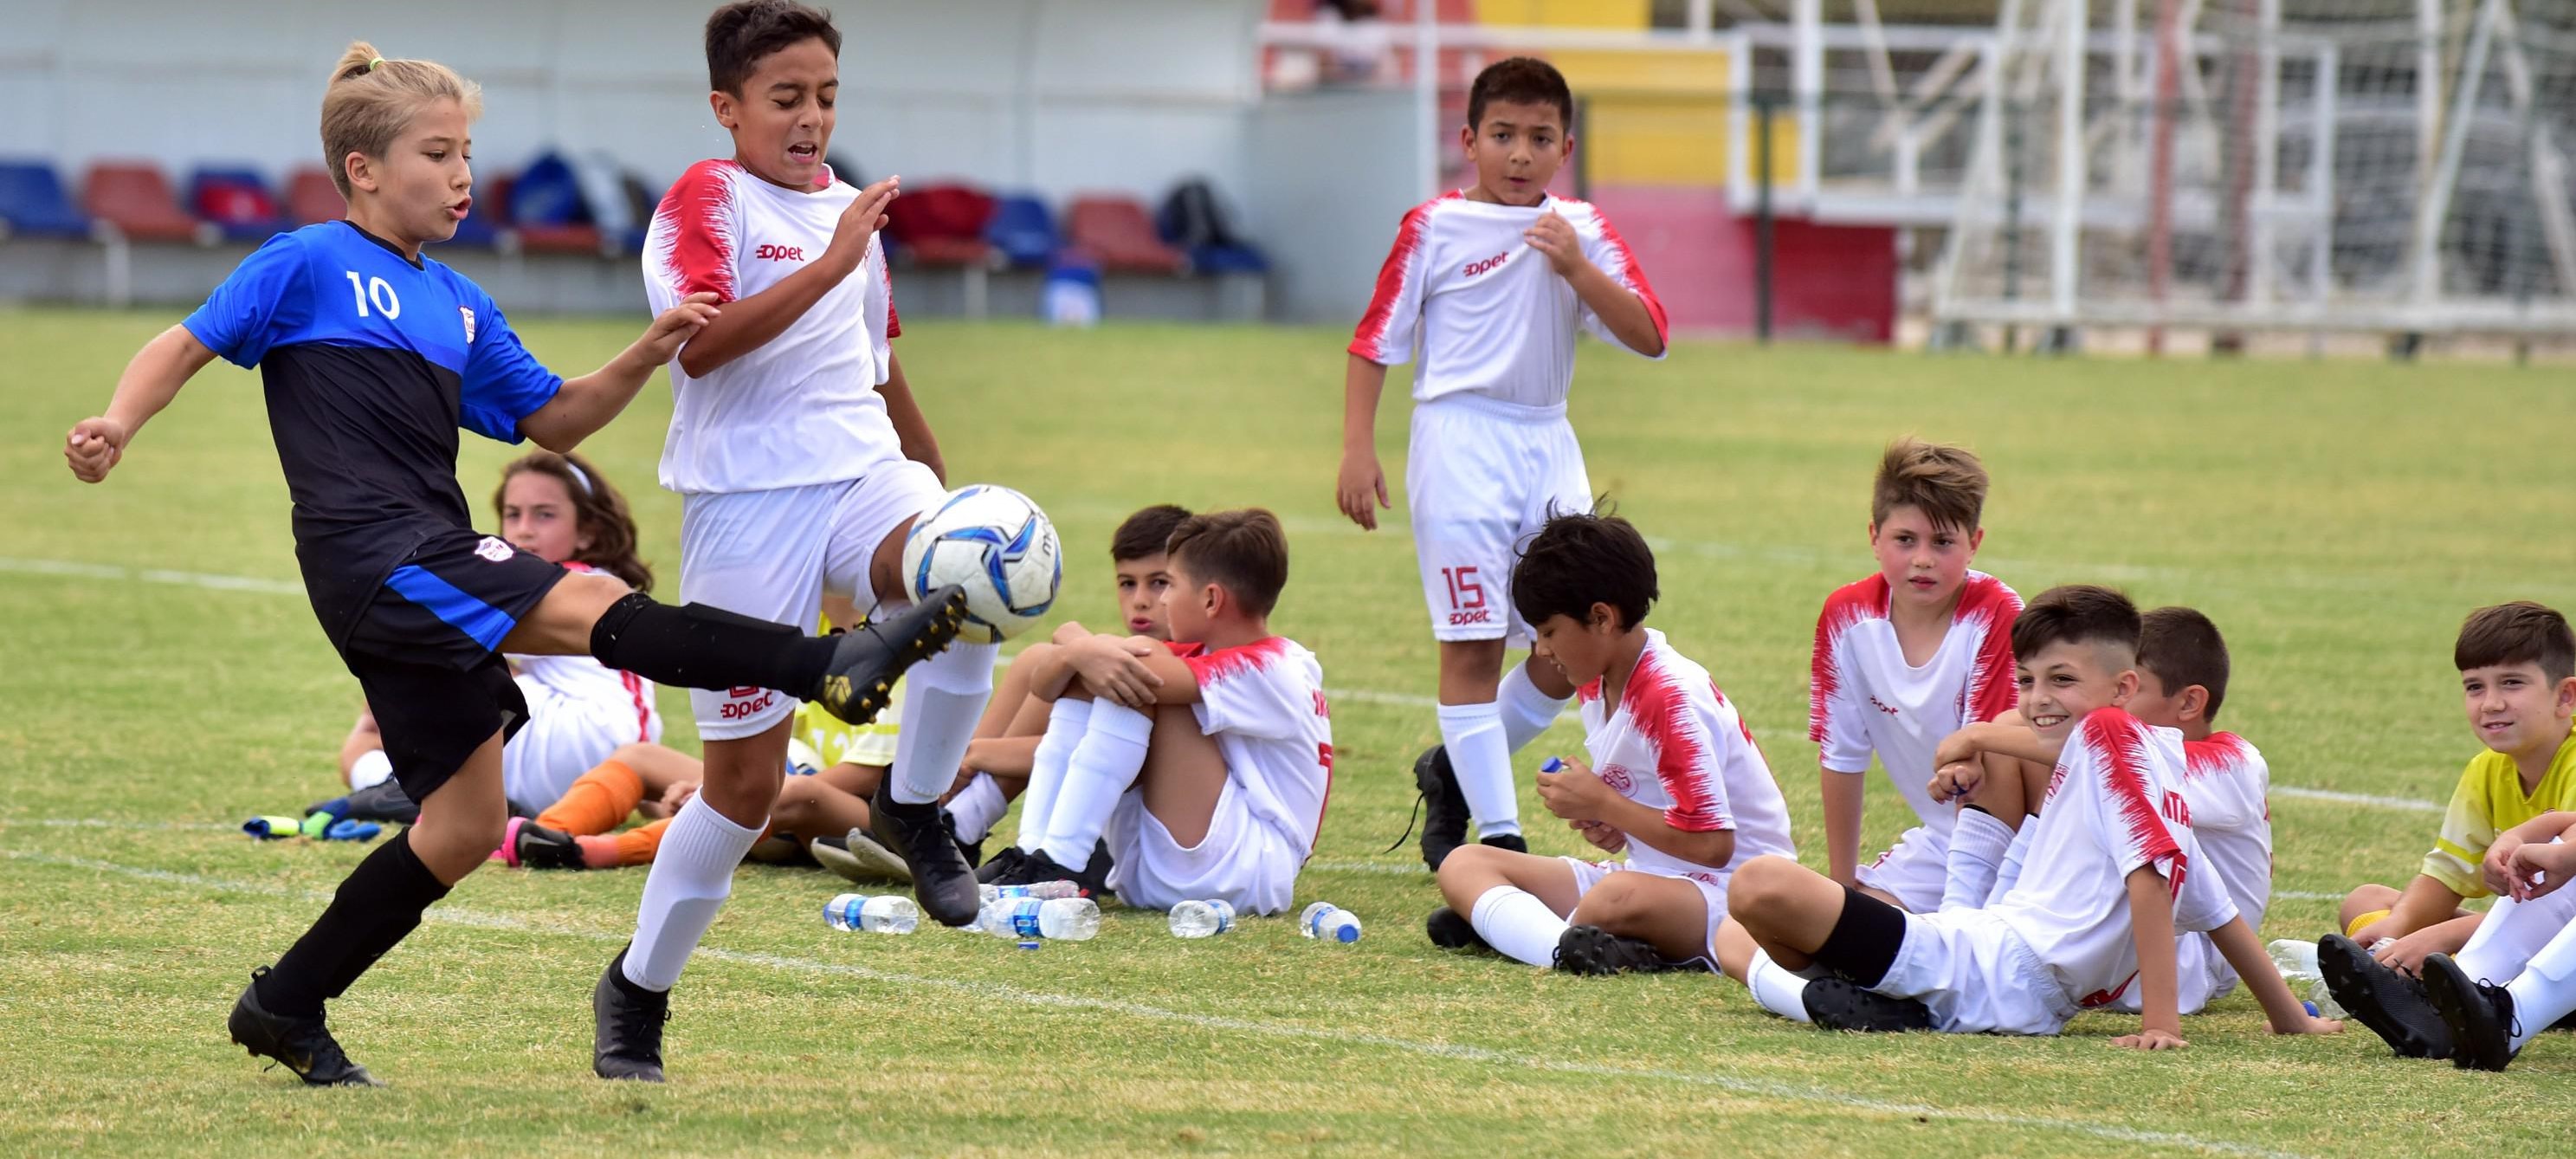 Antalyalı çocuklar Cumhuriyet Kupası için ter döktü